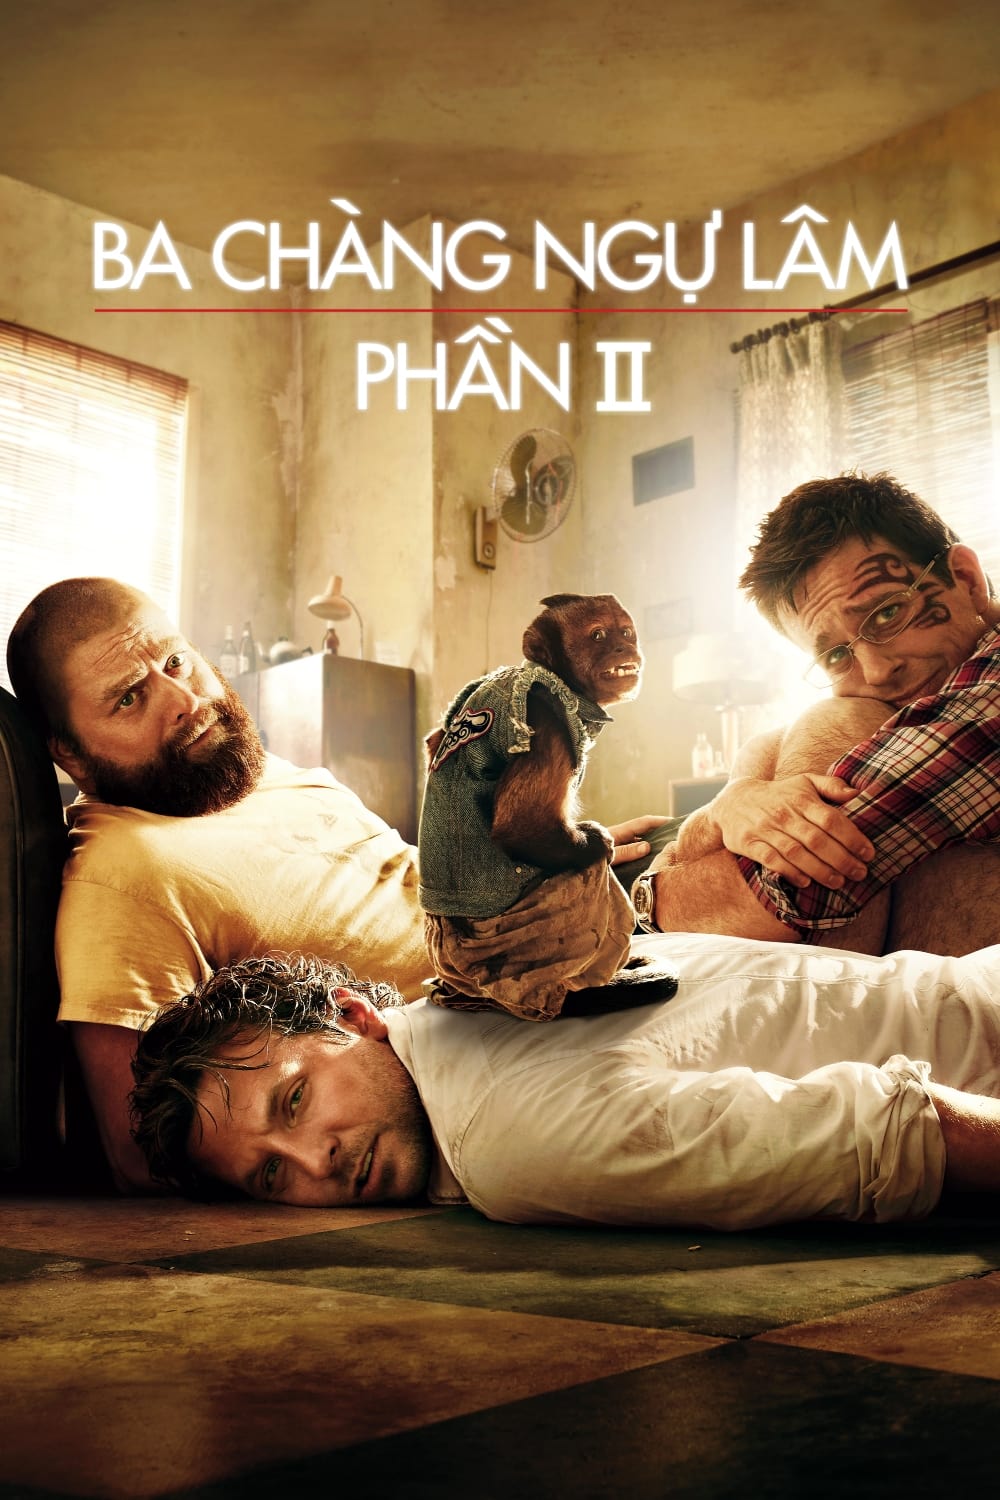 Ba Chàng Ngự Lâm 2 (The Hangover Part II) [2011]